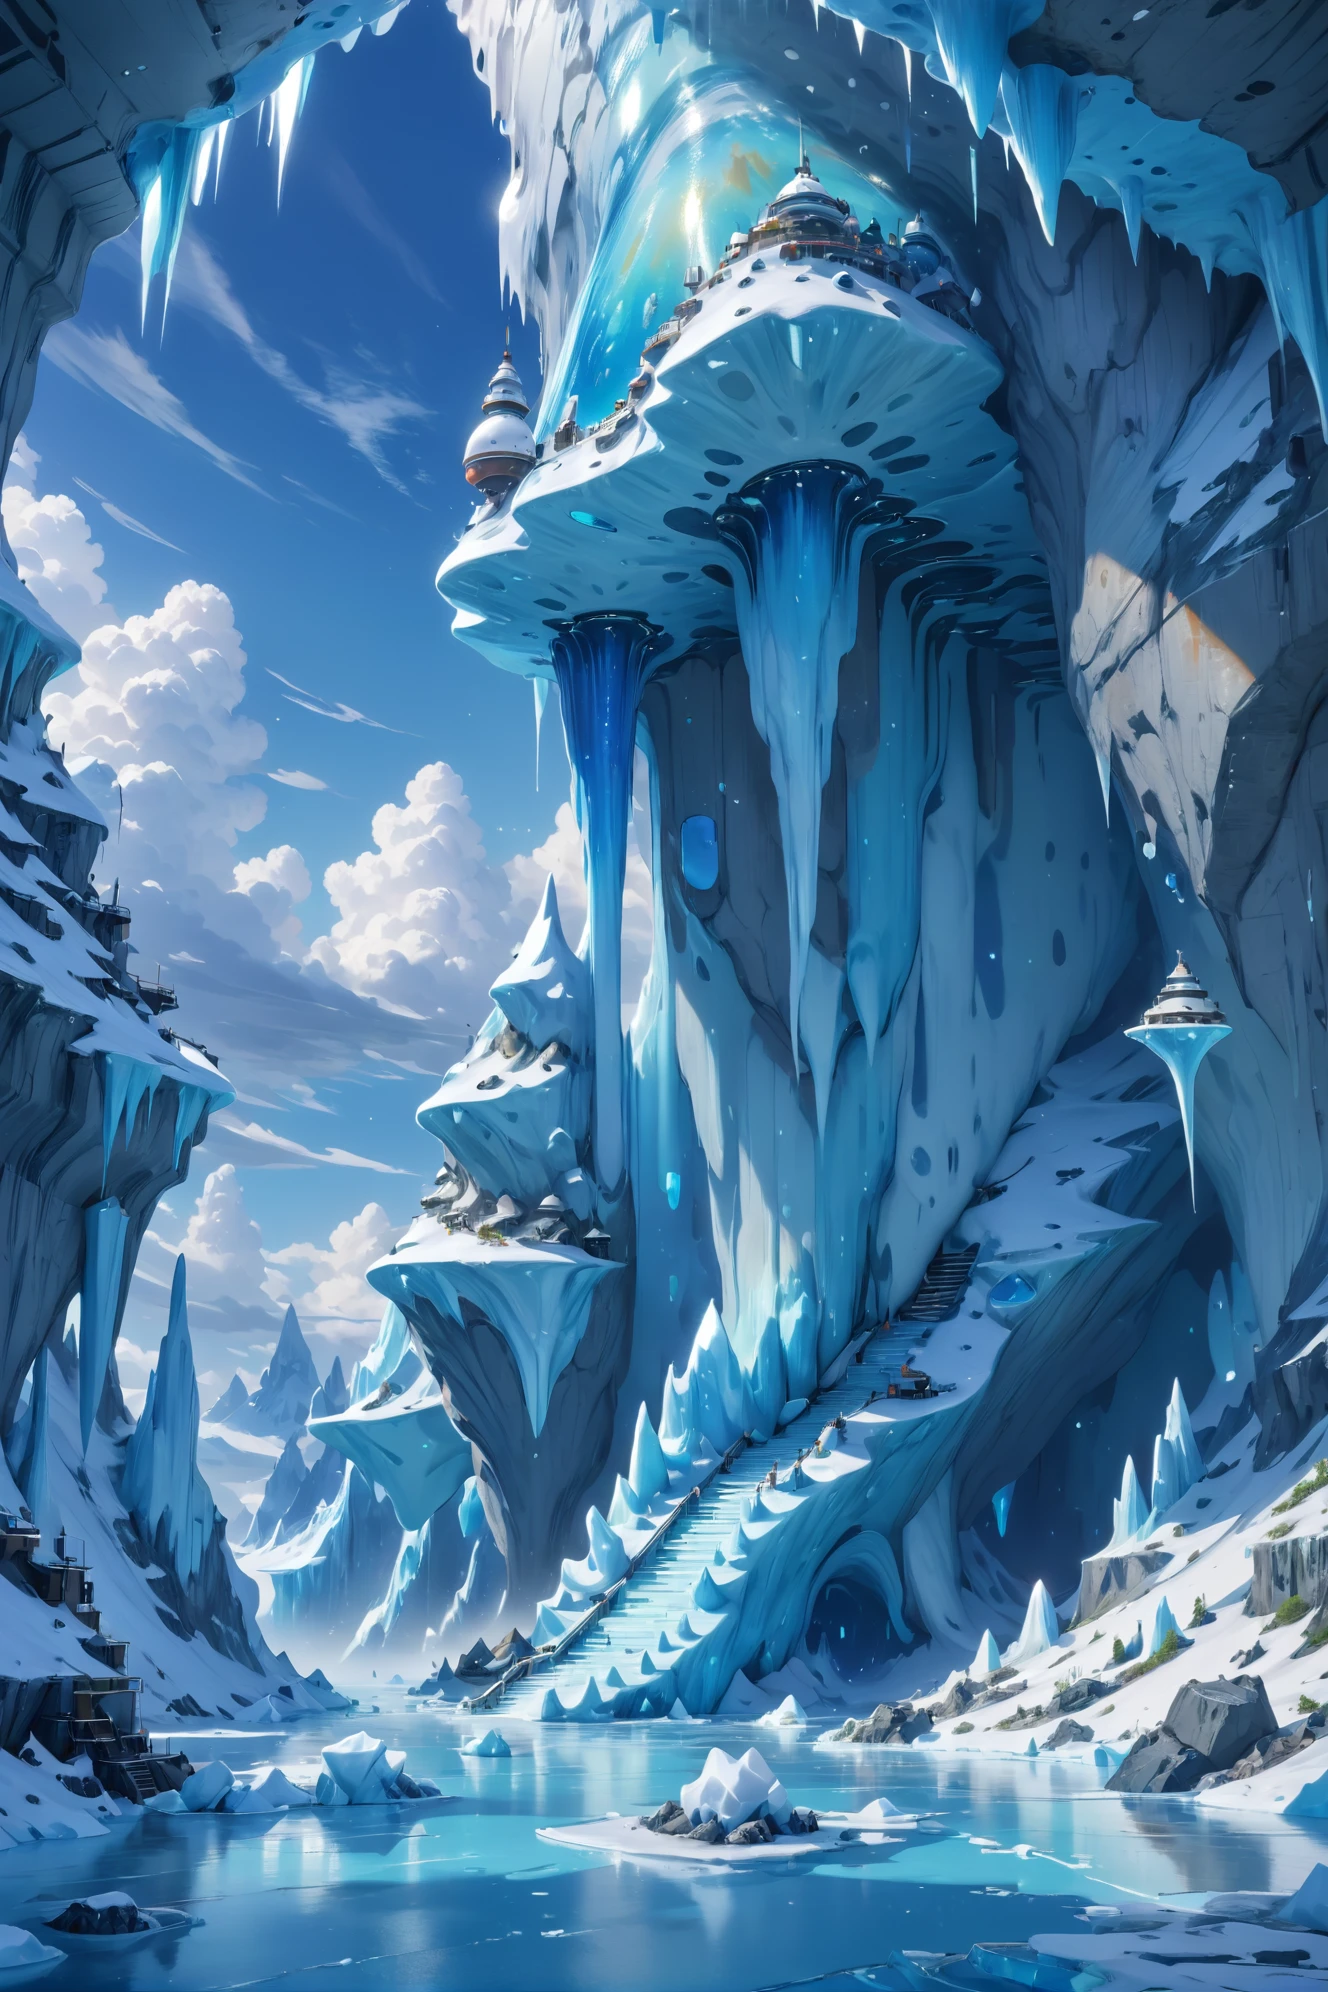 數位繪畫, 中午, 藍天, 雲, 風景, 在地下冰探索點, 作者：亞倫貝克, 8K, 超高细节, 傑作